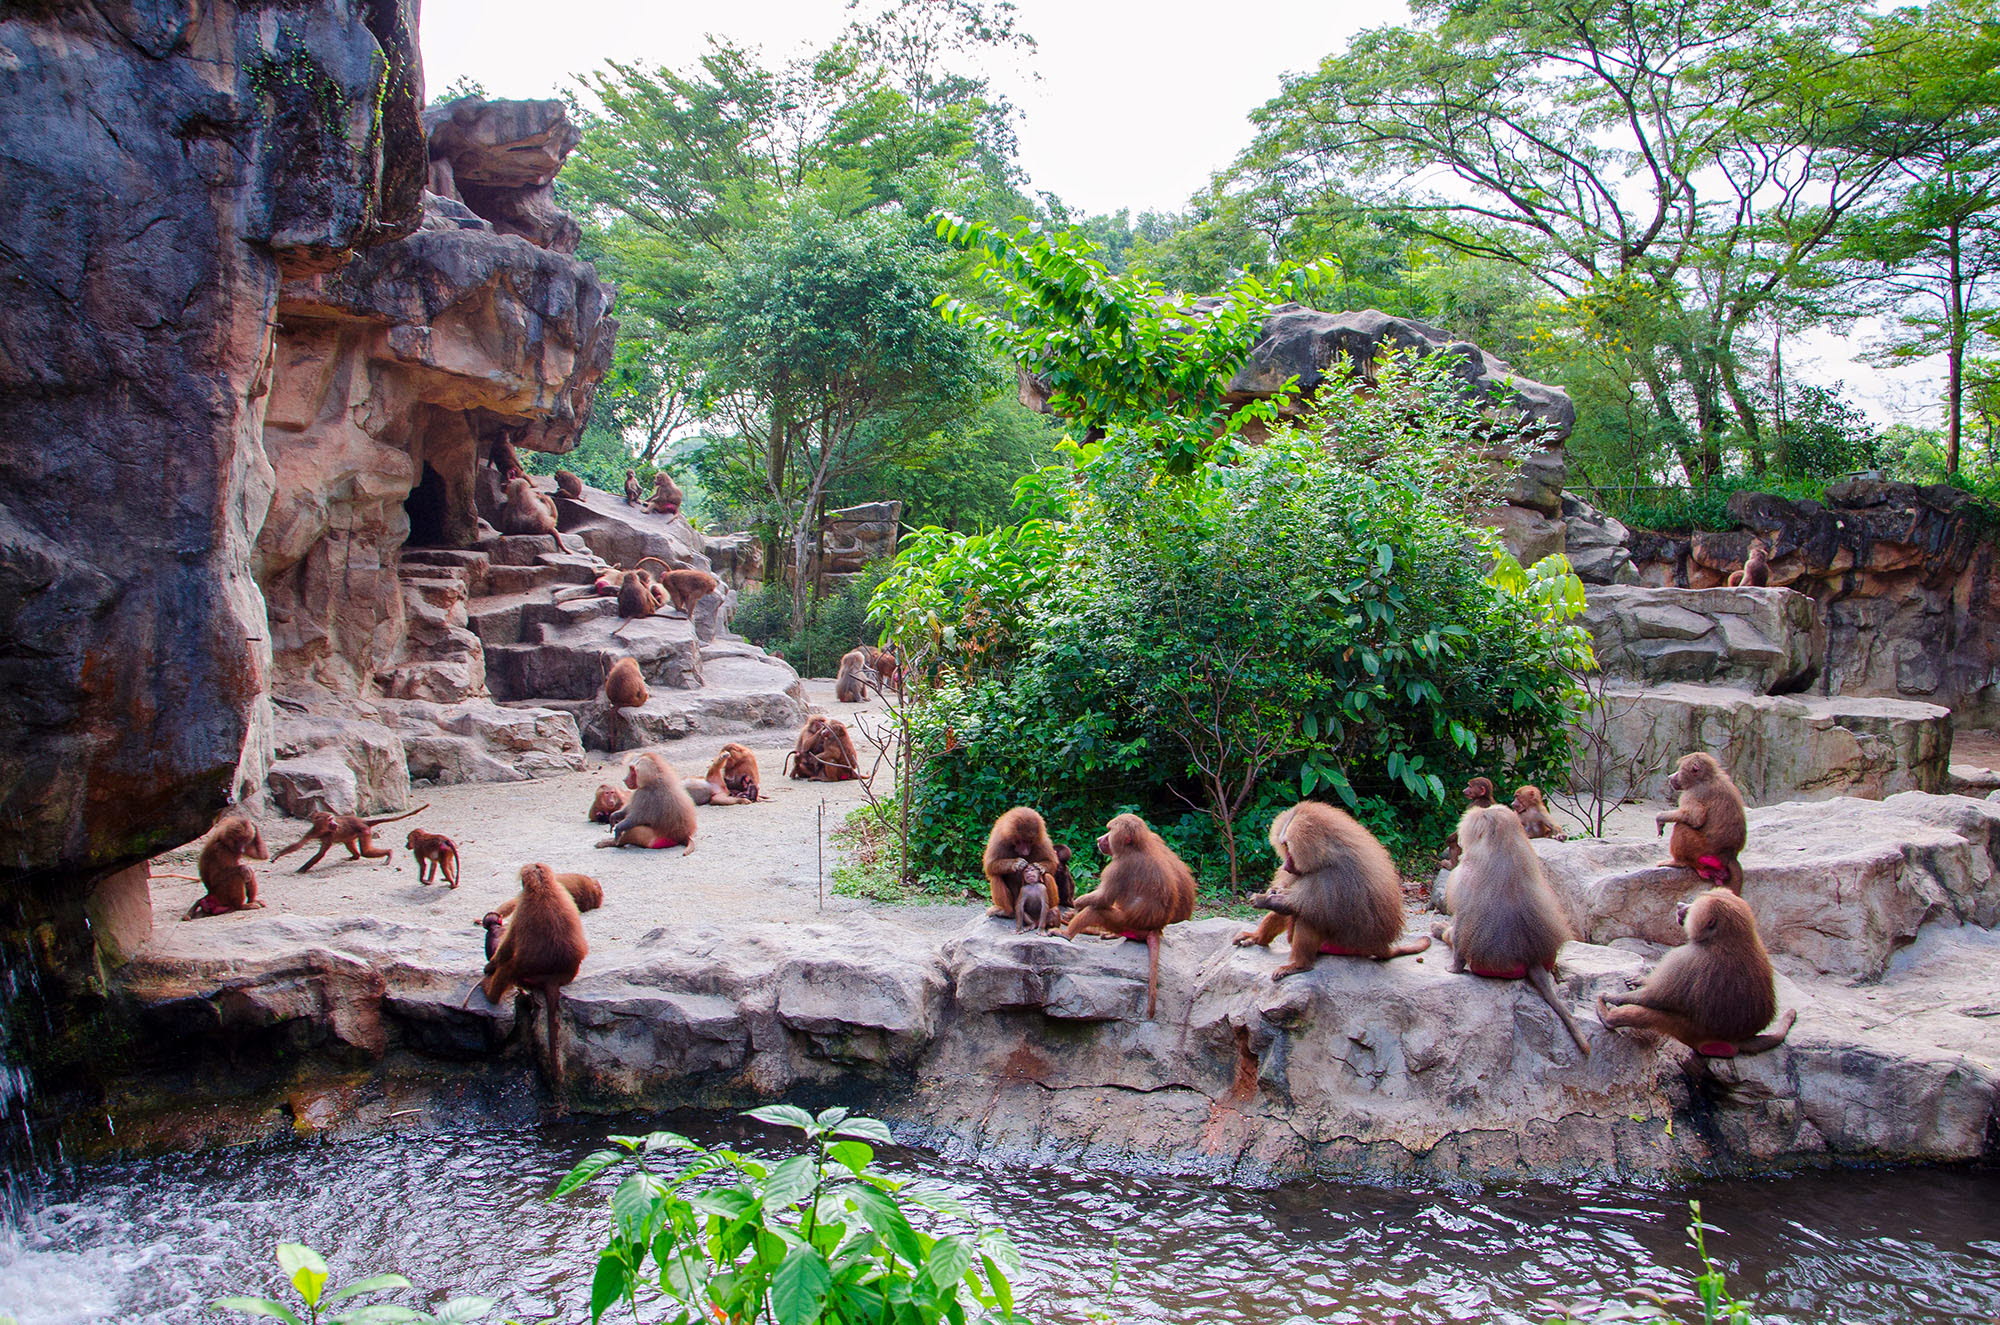 Monkey exhibit at a zoo